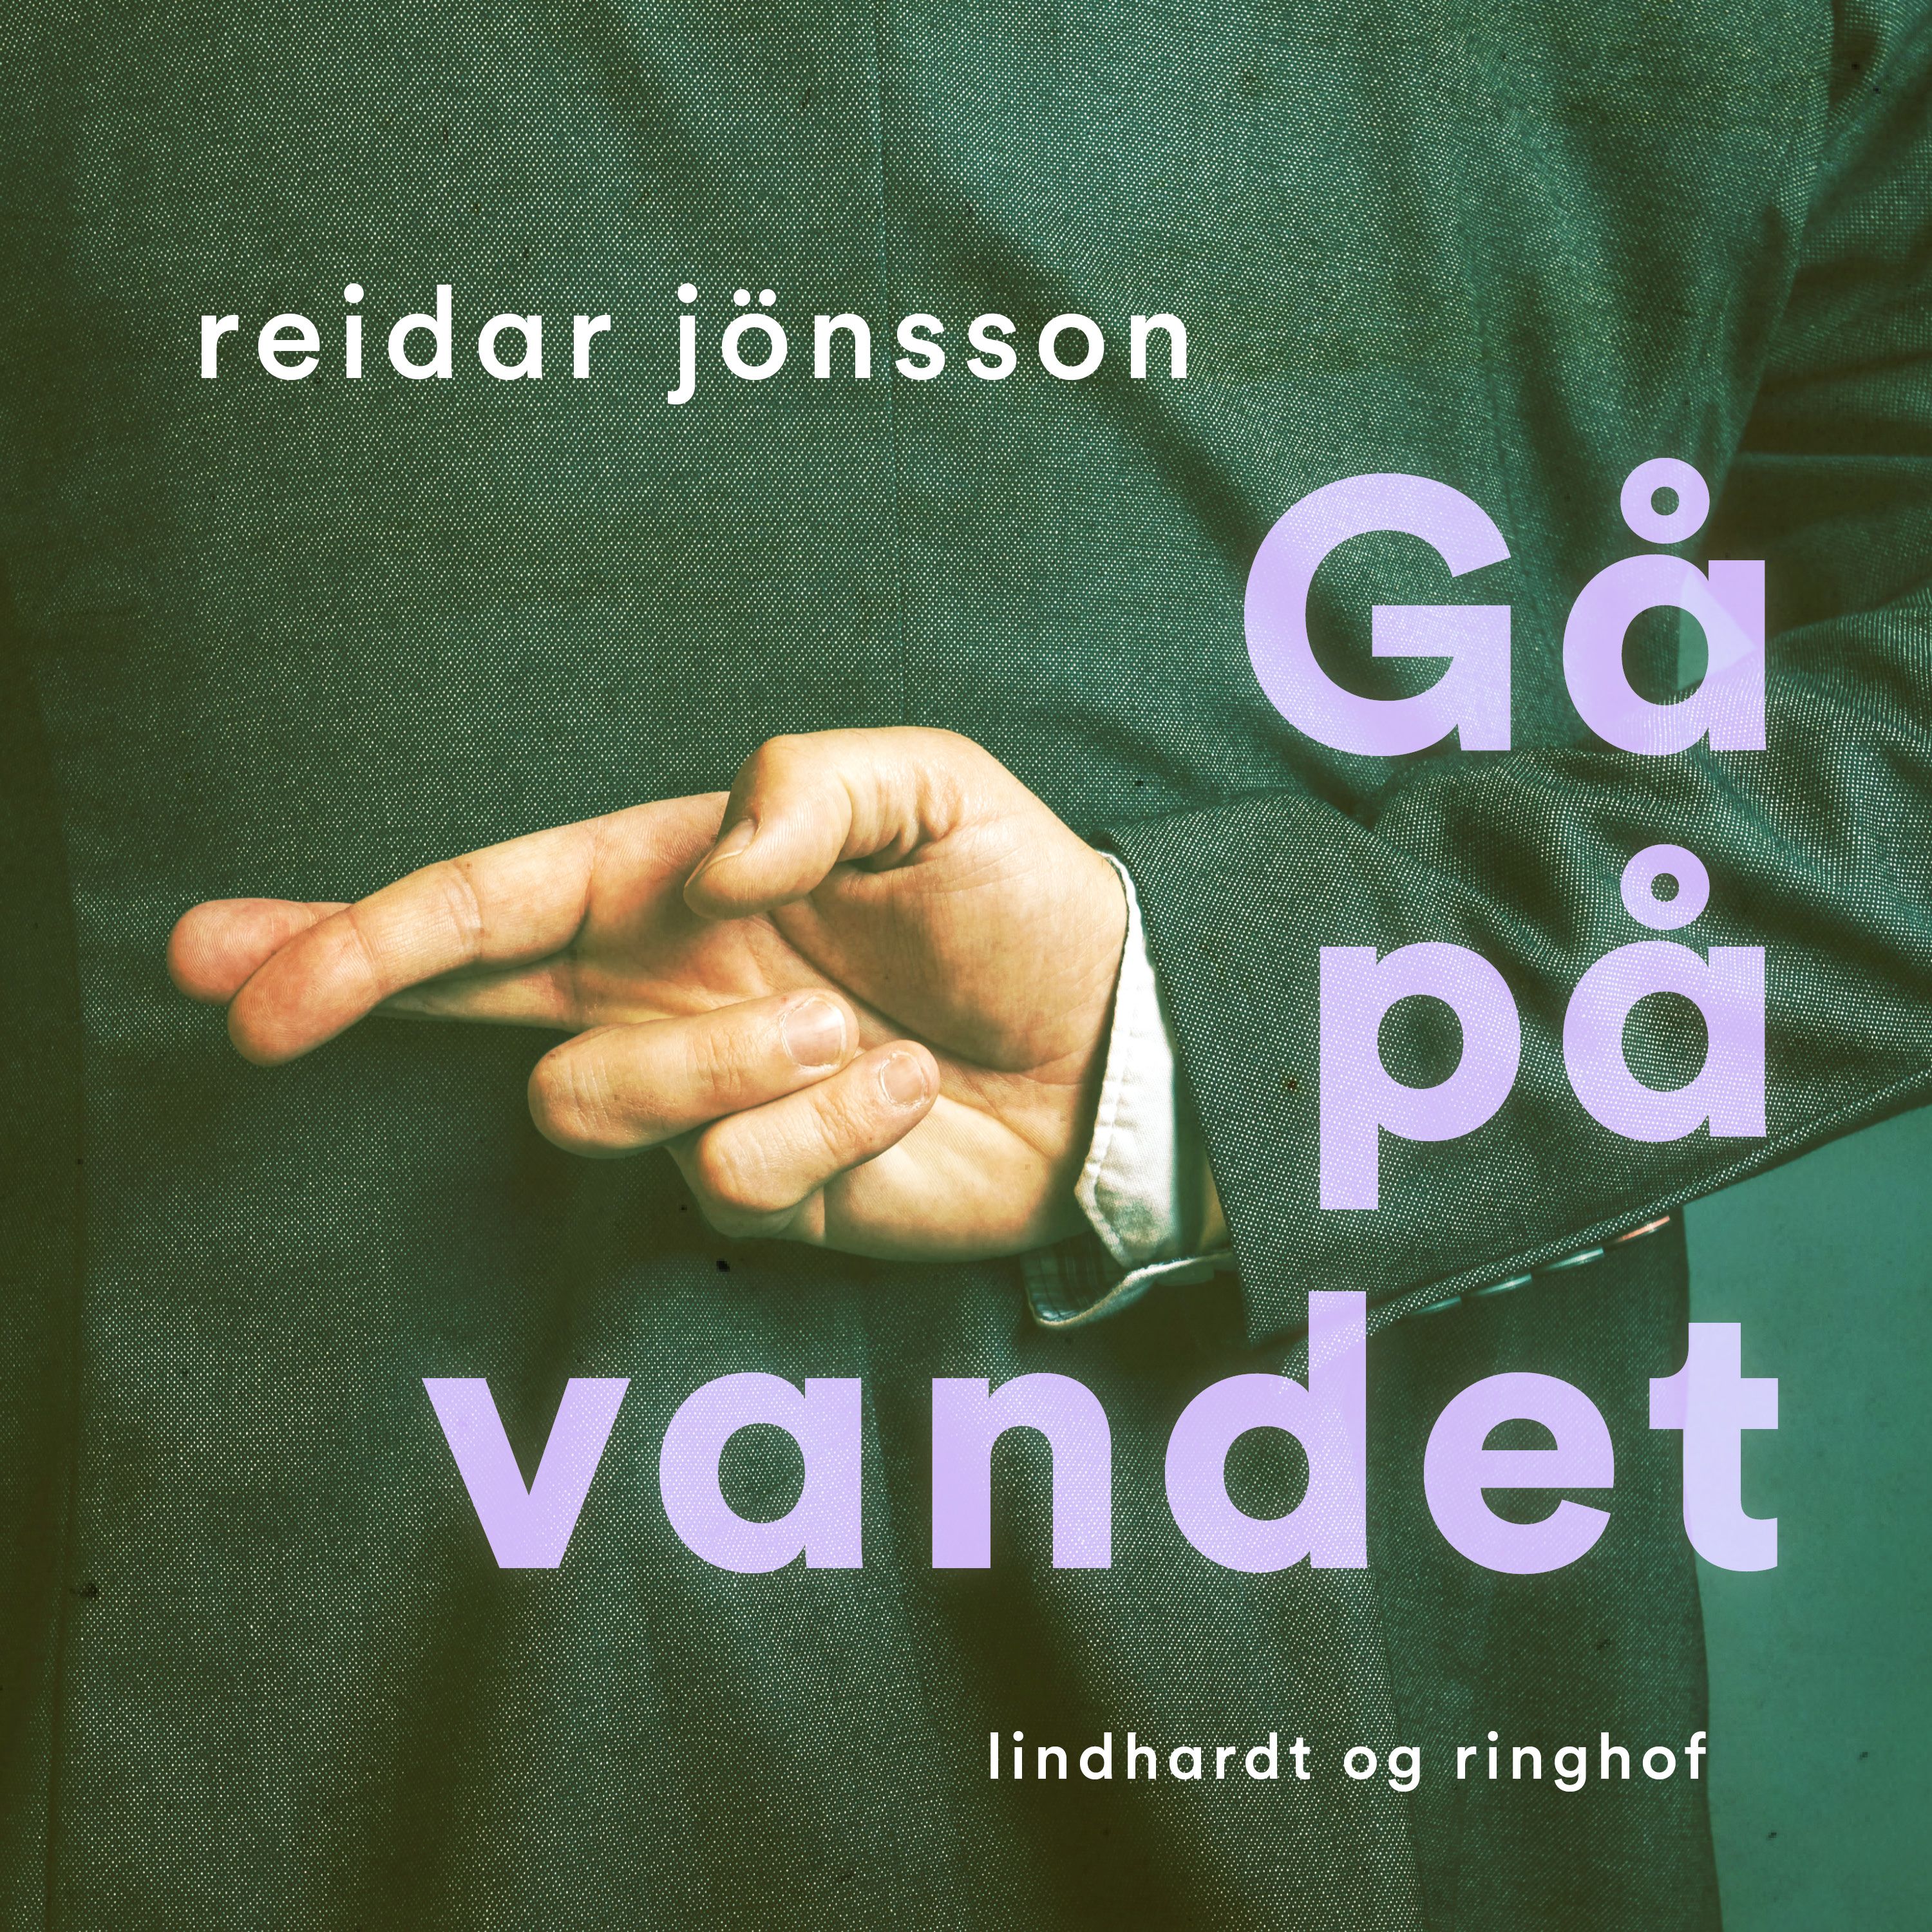 Gå på vandet, lydbog af Reidar Jönsson